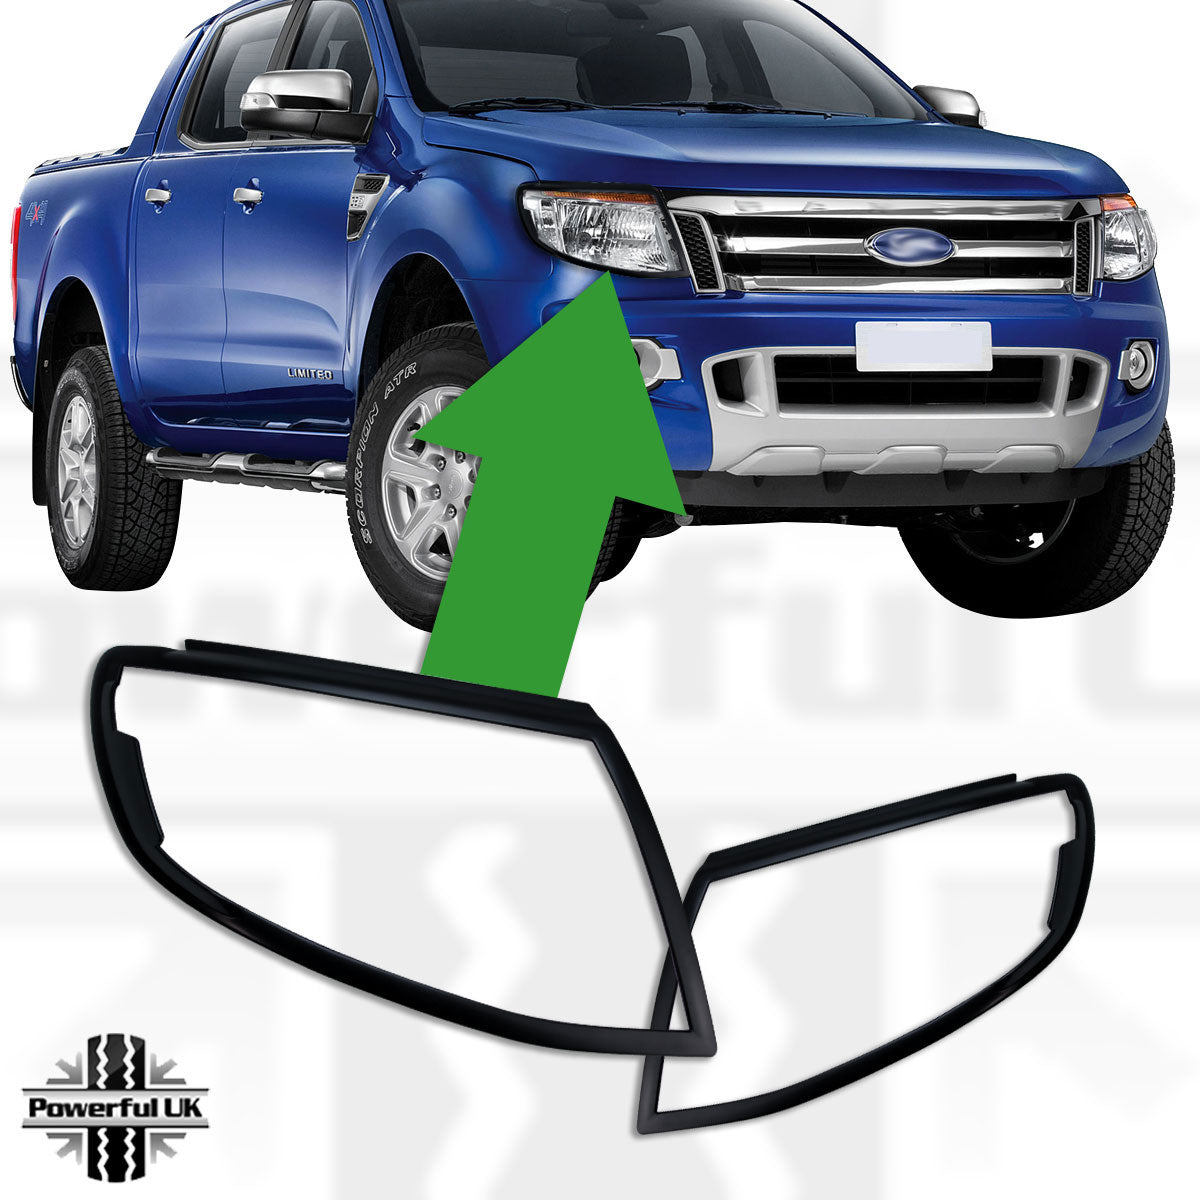 Headlight Surrounds - Matt Black - for Ford Ranger 2012-2015